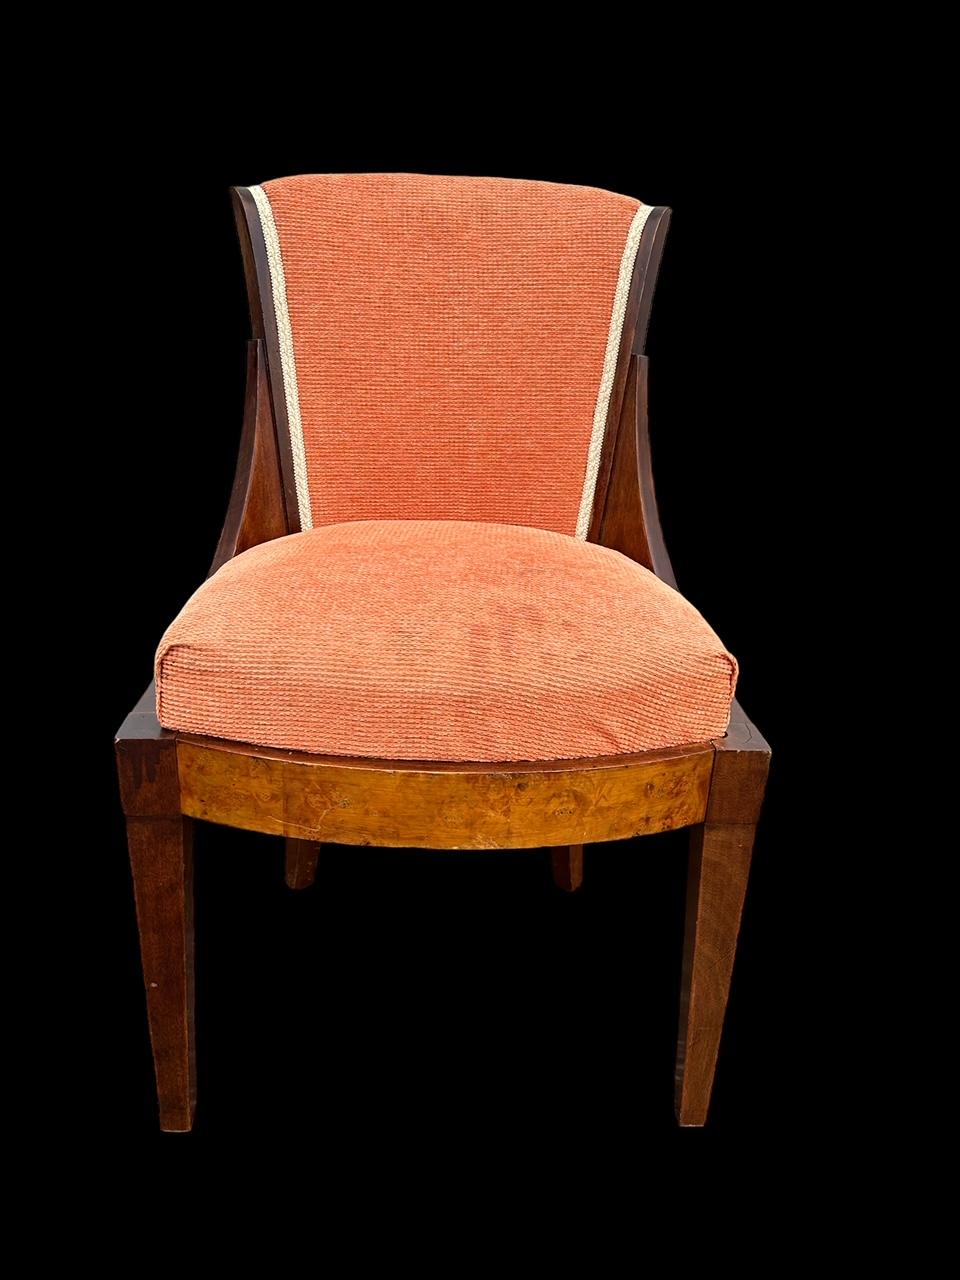 belle chaise art déco des années 1930 dans son état d'origine 
beau design et qualite du milieu du siecle francais 
